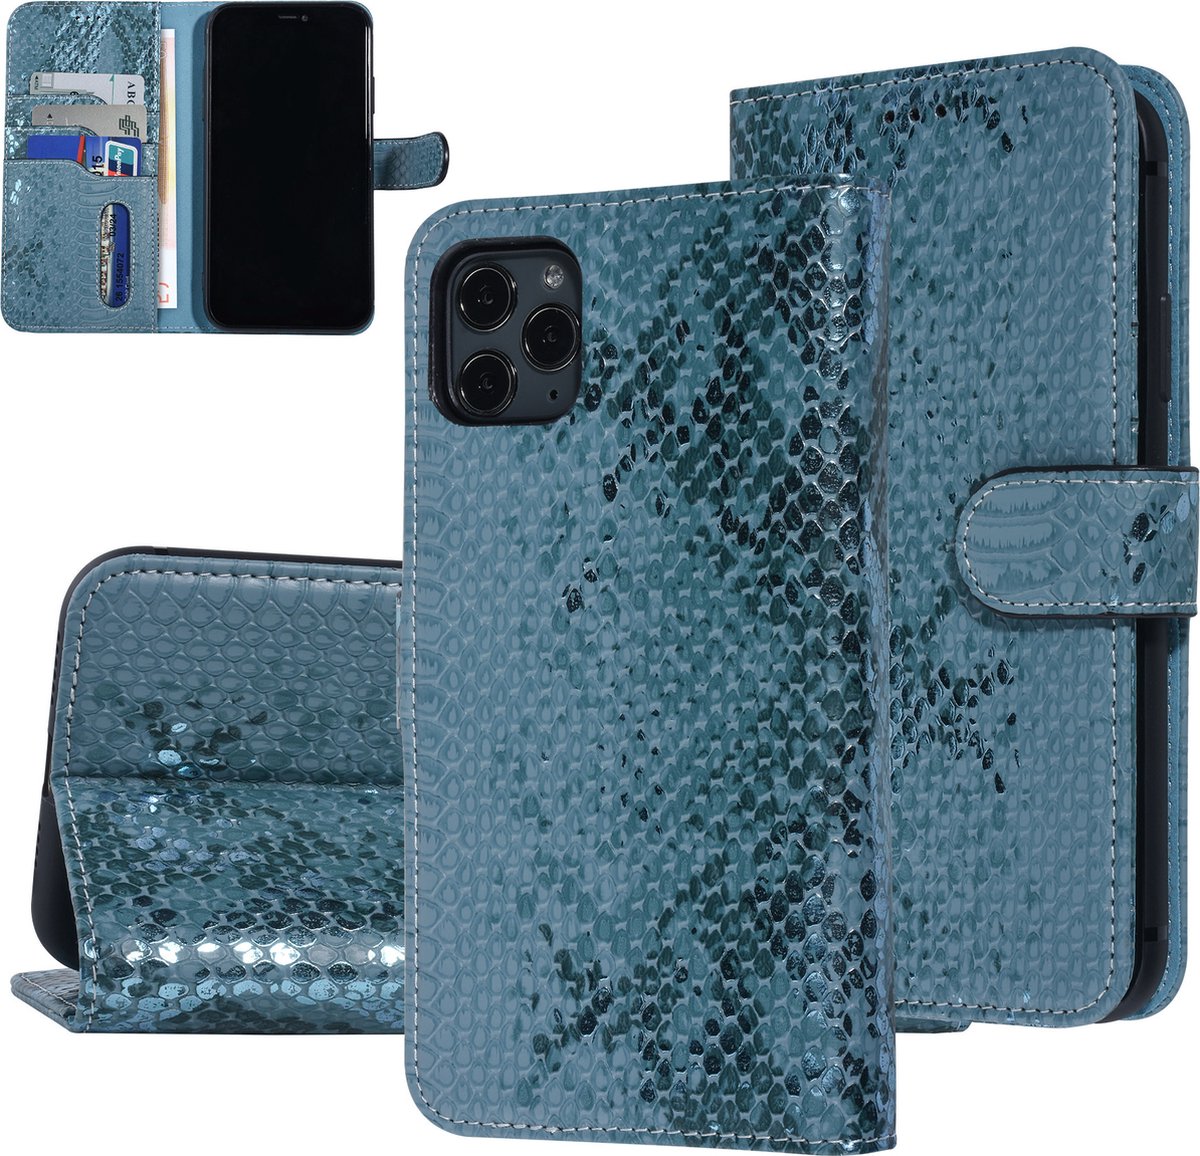 UNIQ Accessory iPhone 11 Pro Max Slangenleer Booktype hoesje - Pasjeshouder voor 3 pasjes - Turquoise